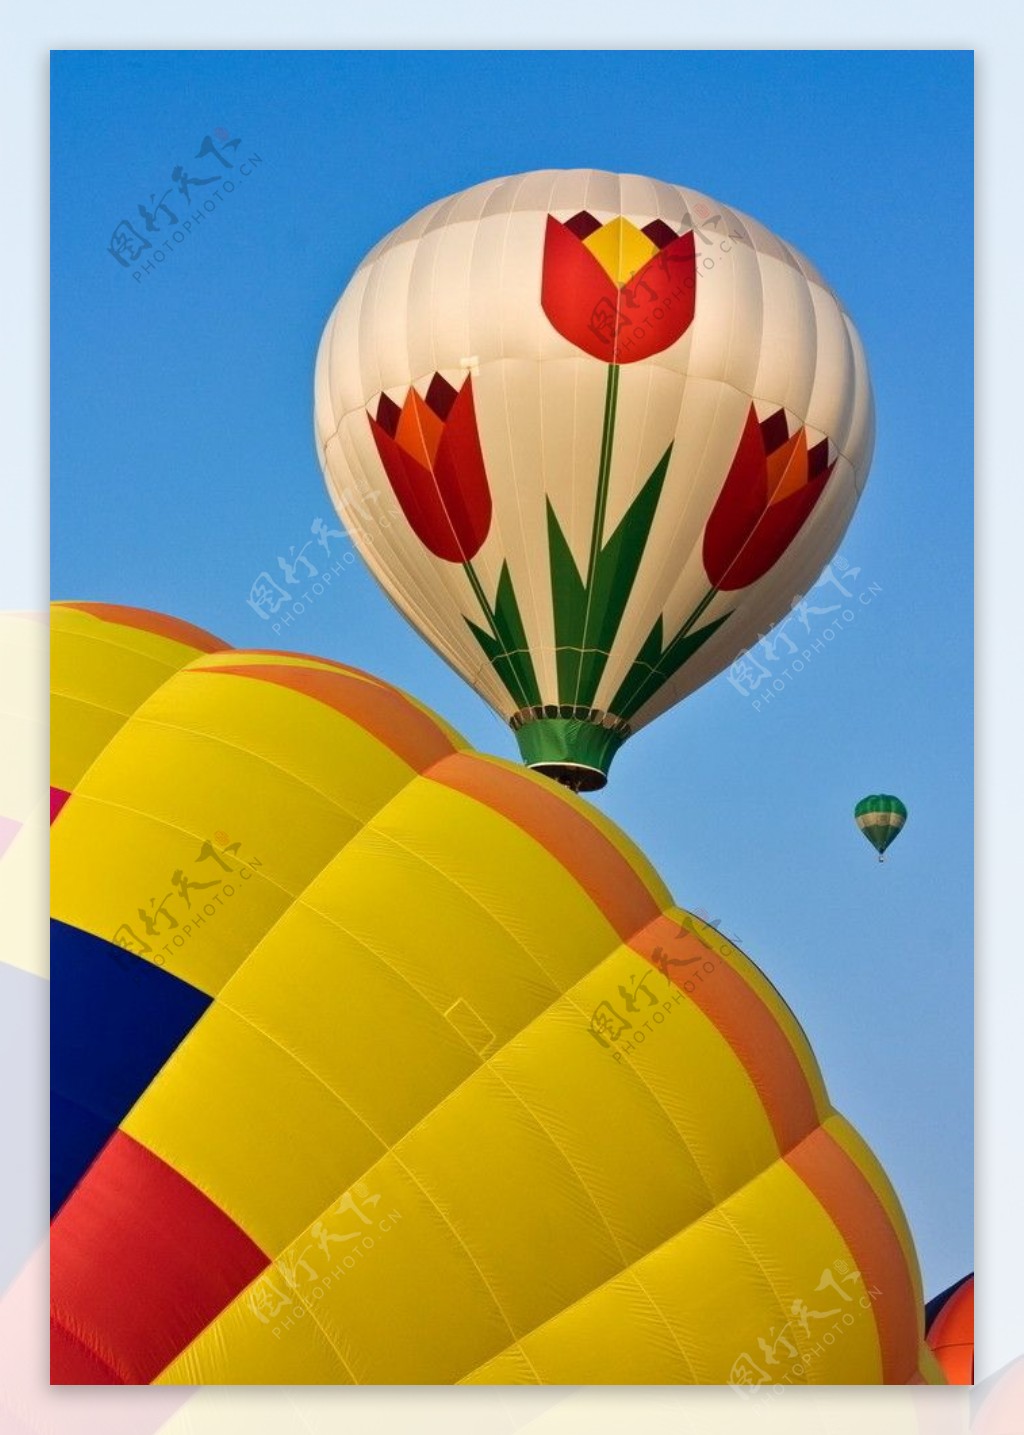 法国洛林热气球节 彩色热气球缤纷升空唯美至极_国际新闻_环球网